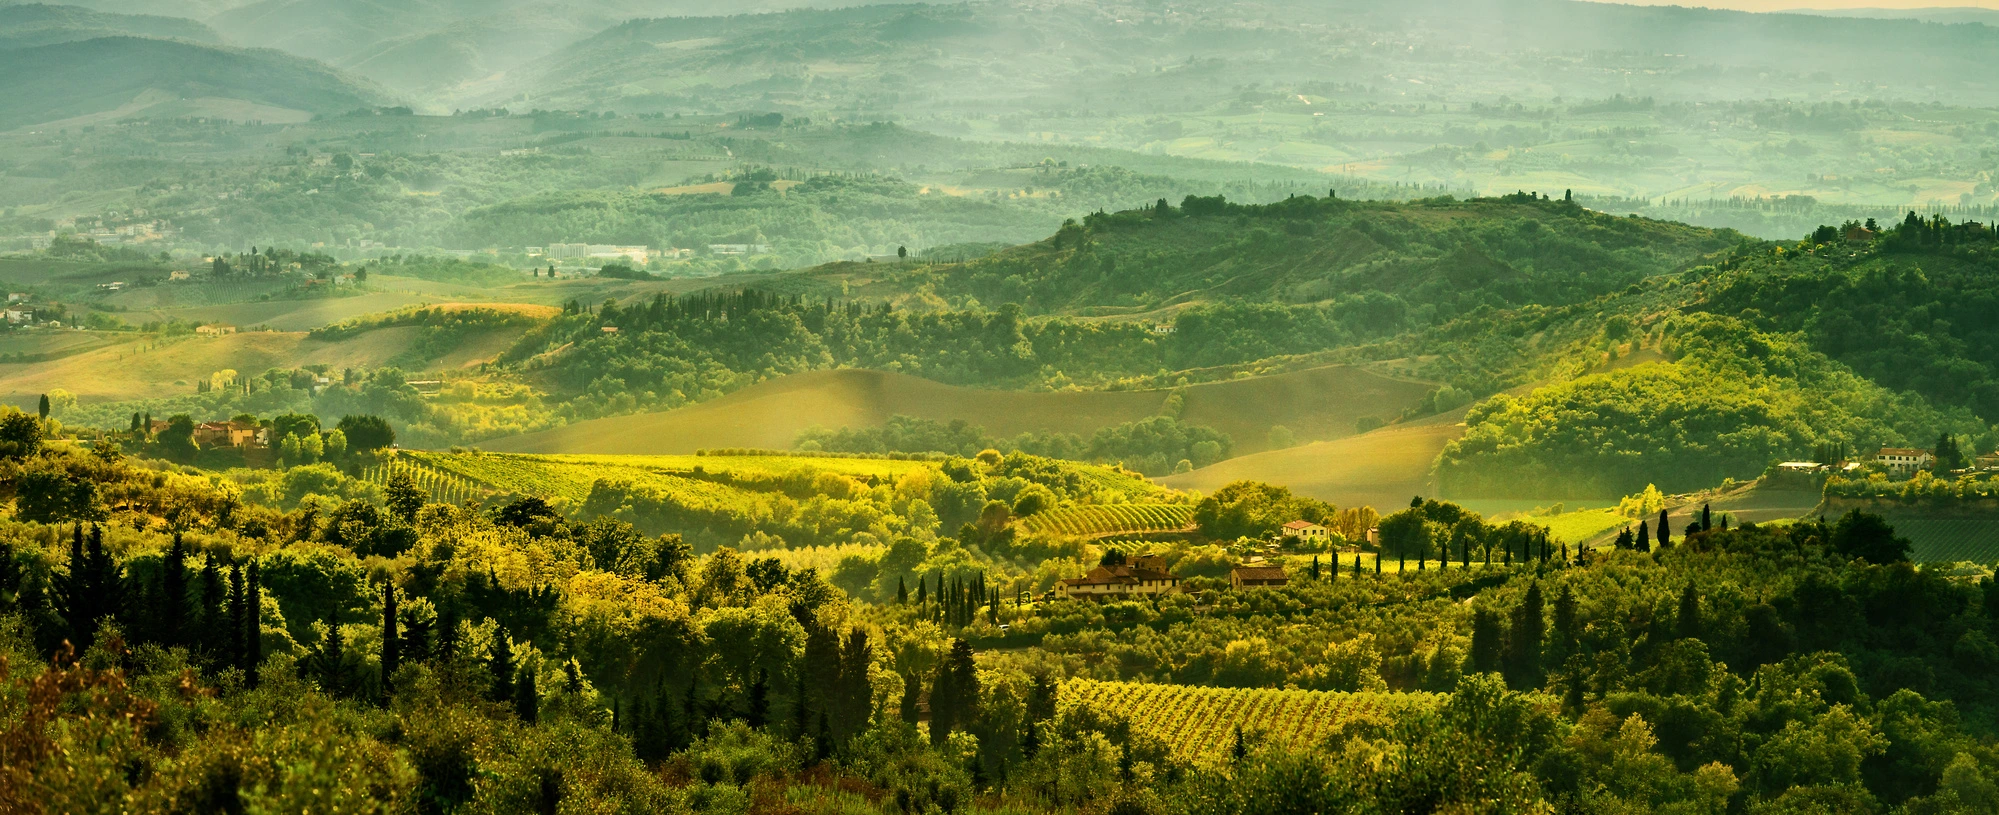 Die Landschaften in Italien sind wunderschön. Buche jetzt dein Landhotel in Italien mit Ausblick